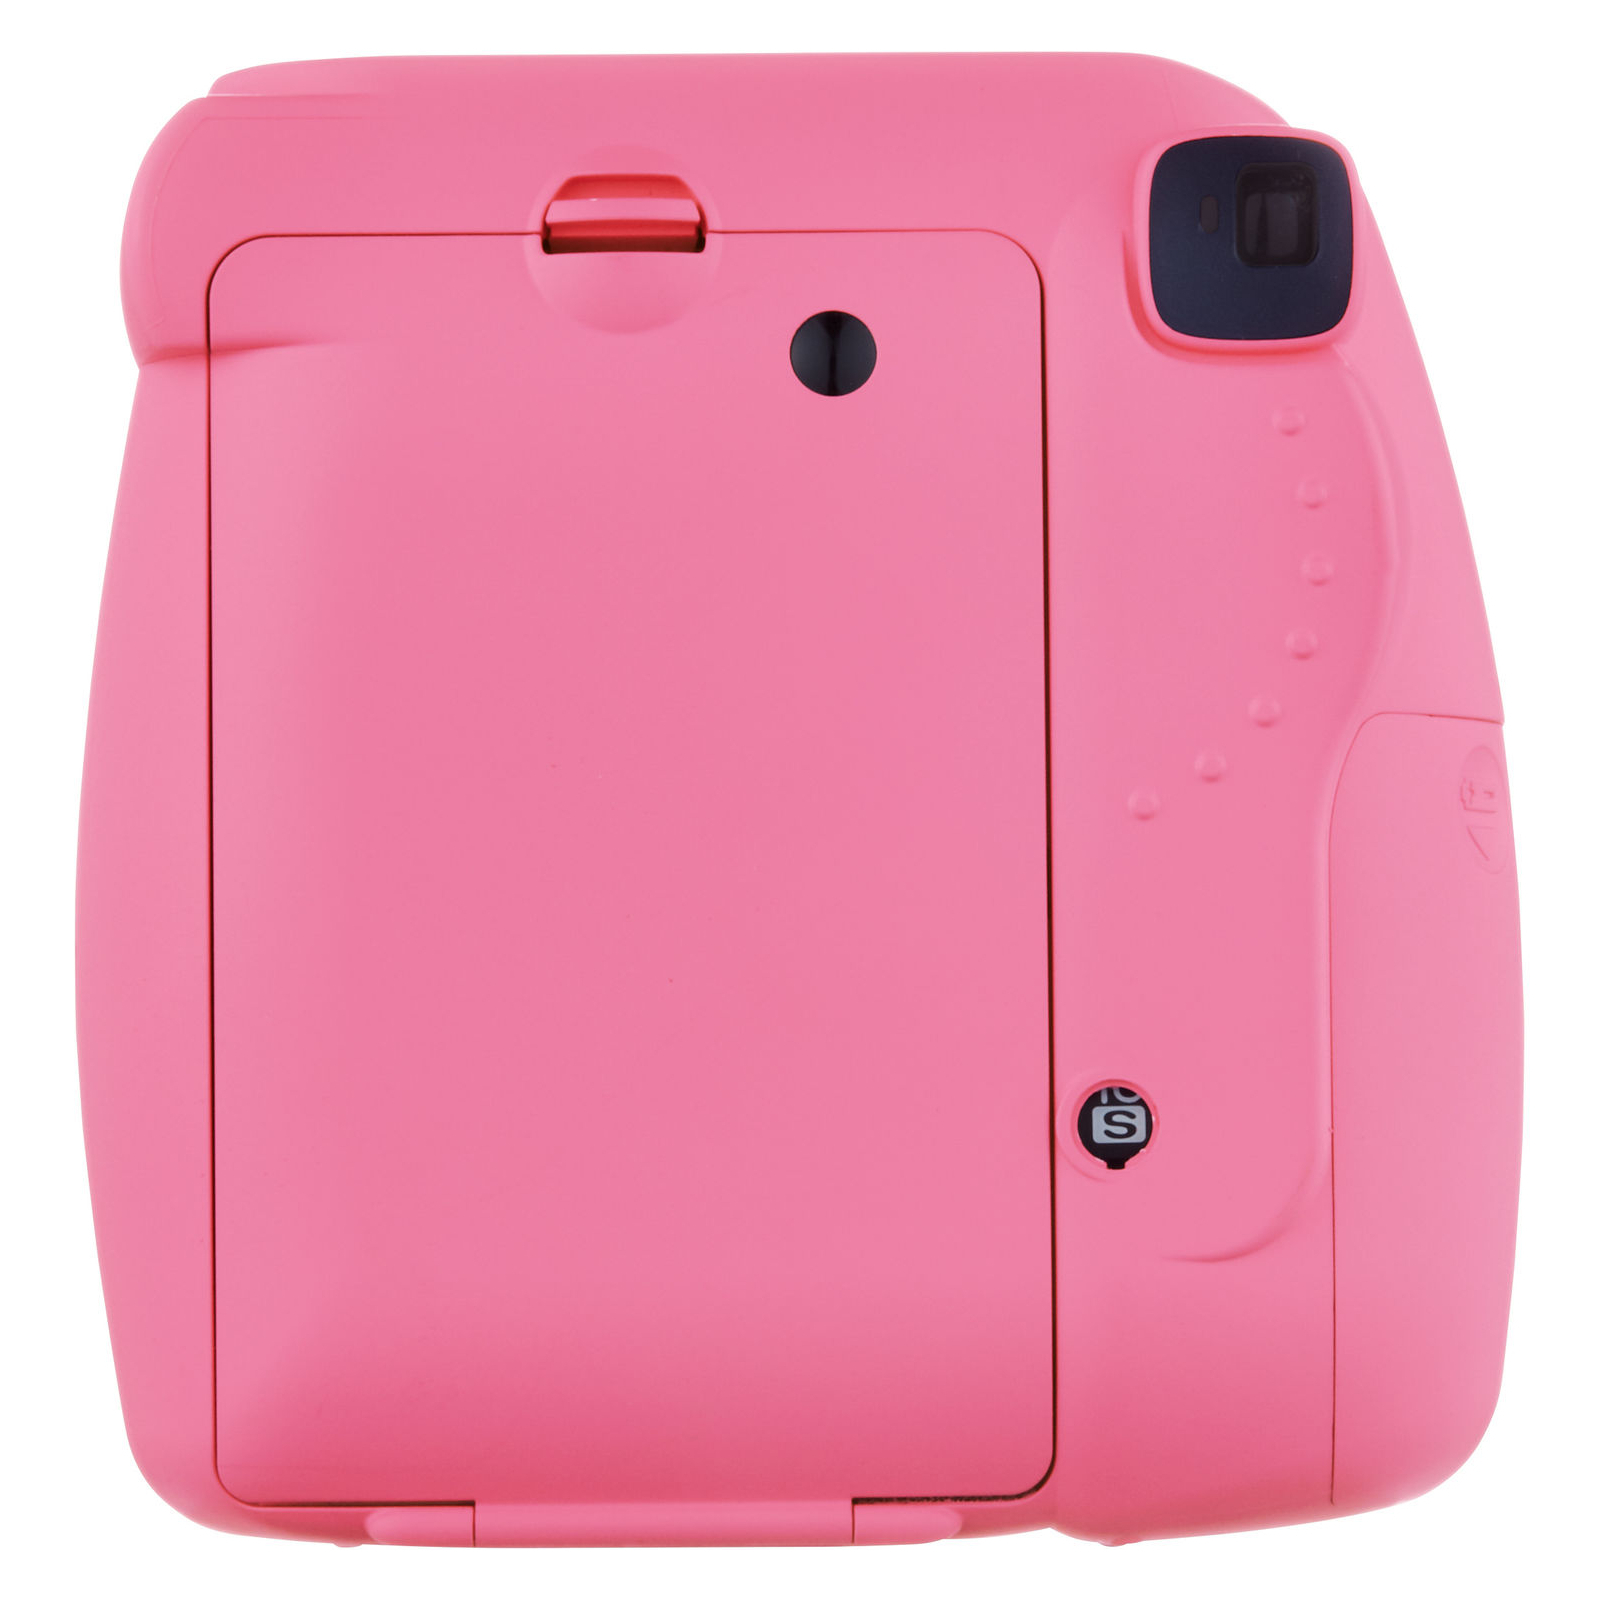 Камера моментальной печати Fujifilm INSTAX Mini 9 Flamingo Pink (16550784) изображение 5